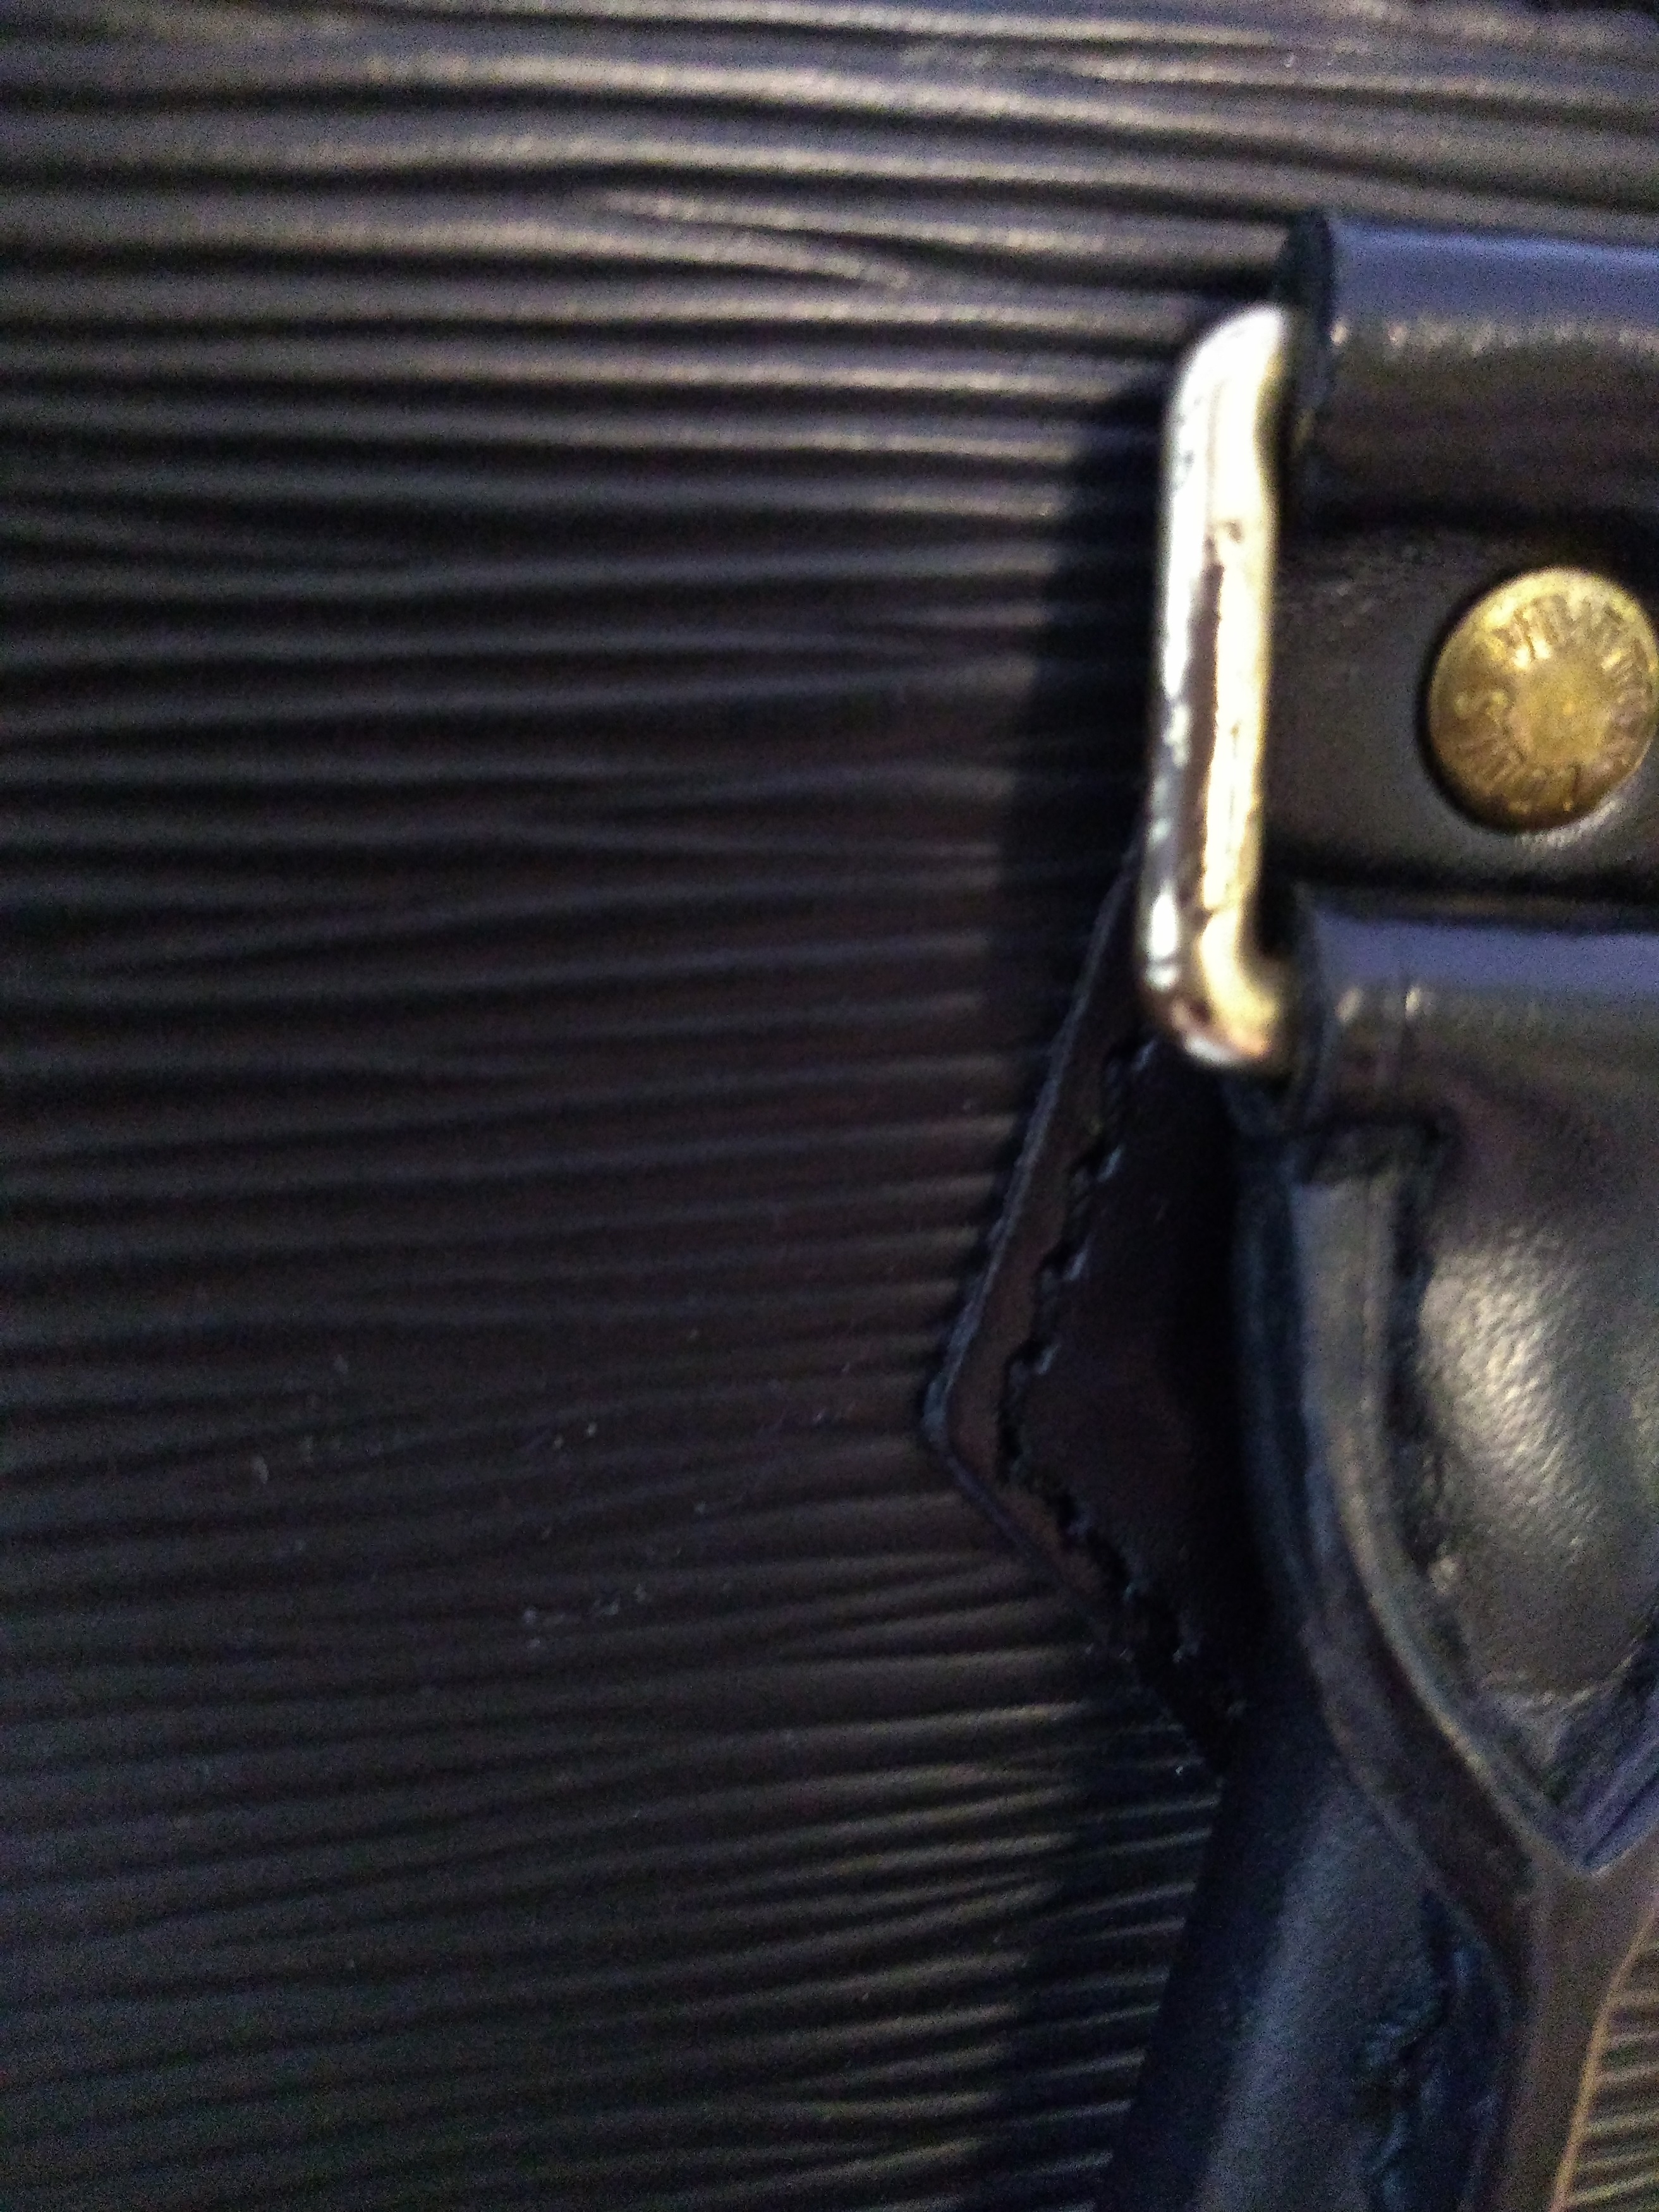 Louis Vuitton Cassis Epi Leather Alma Pm Satchel Auction